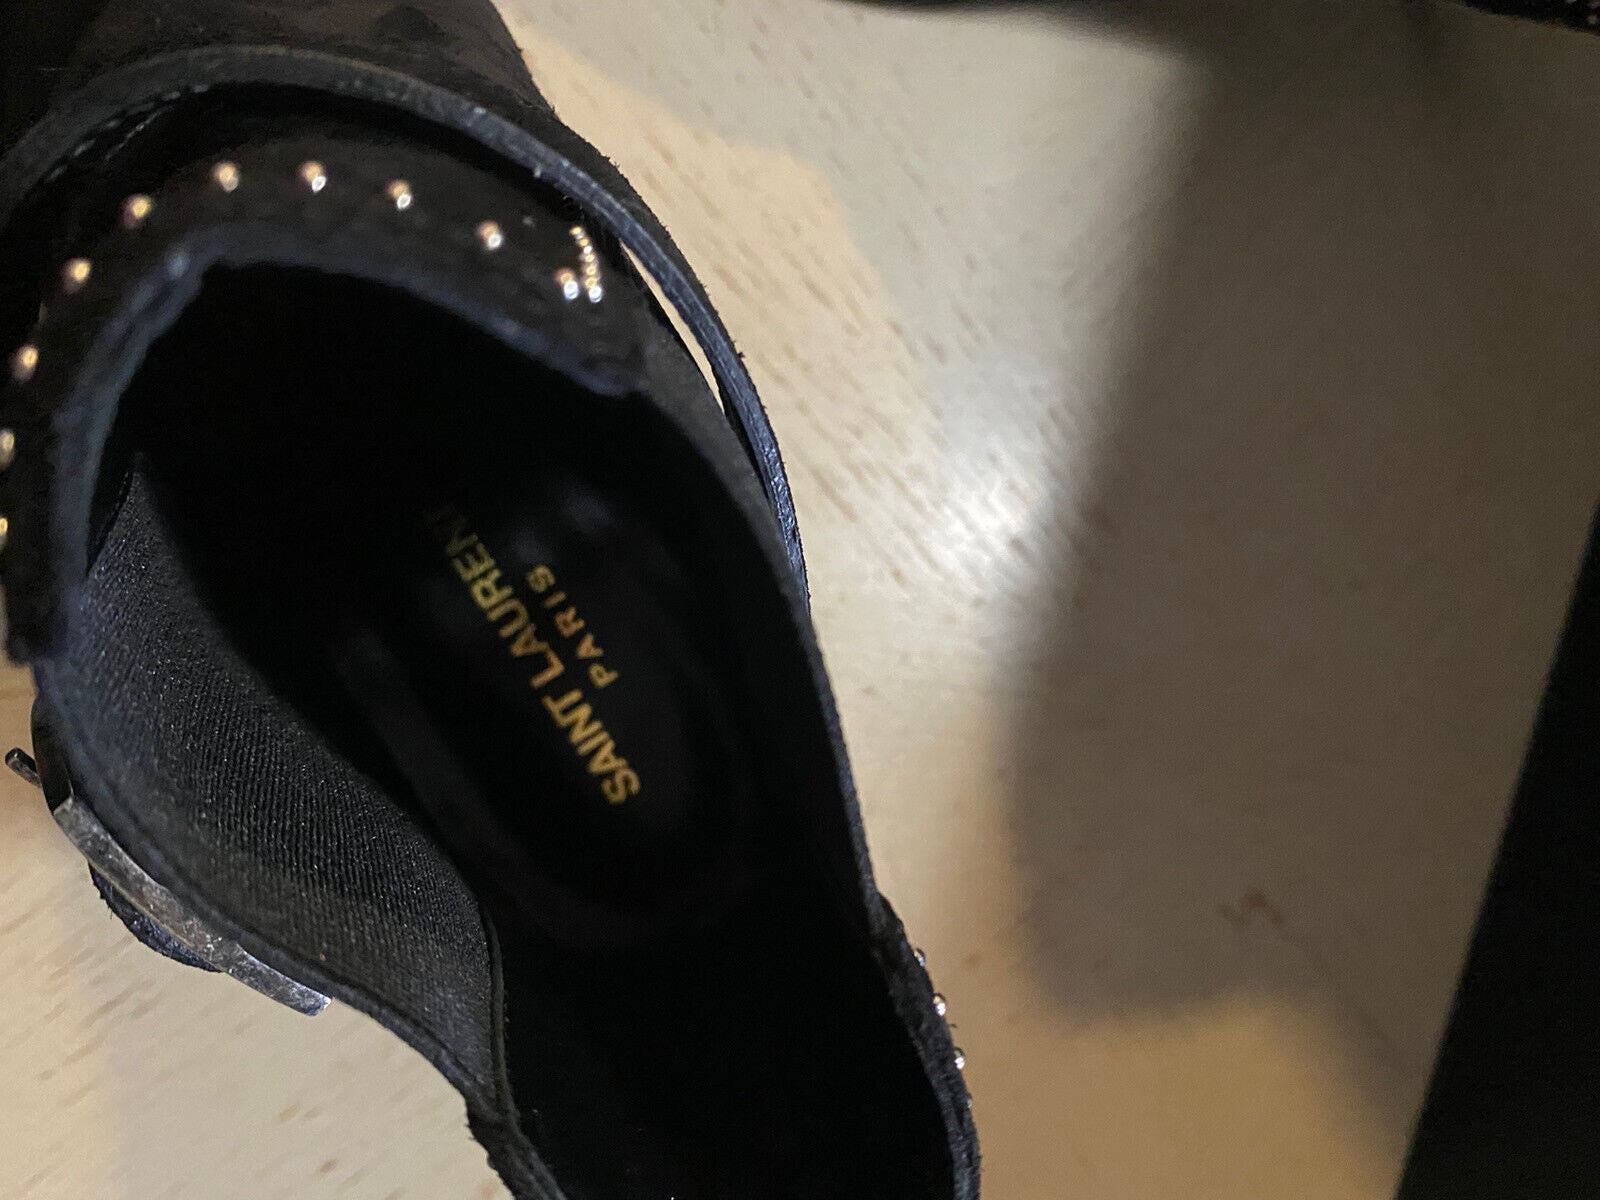 NIB $1595 Saint Laurent Женские замшевые сапоги Туфли черные 567615 9,5 США/39,5 ЕС